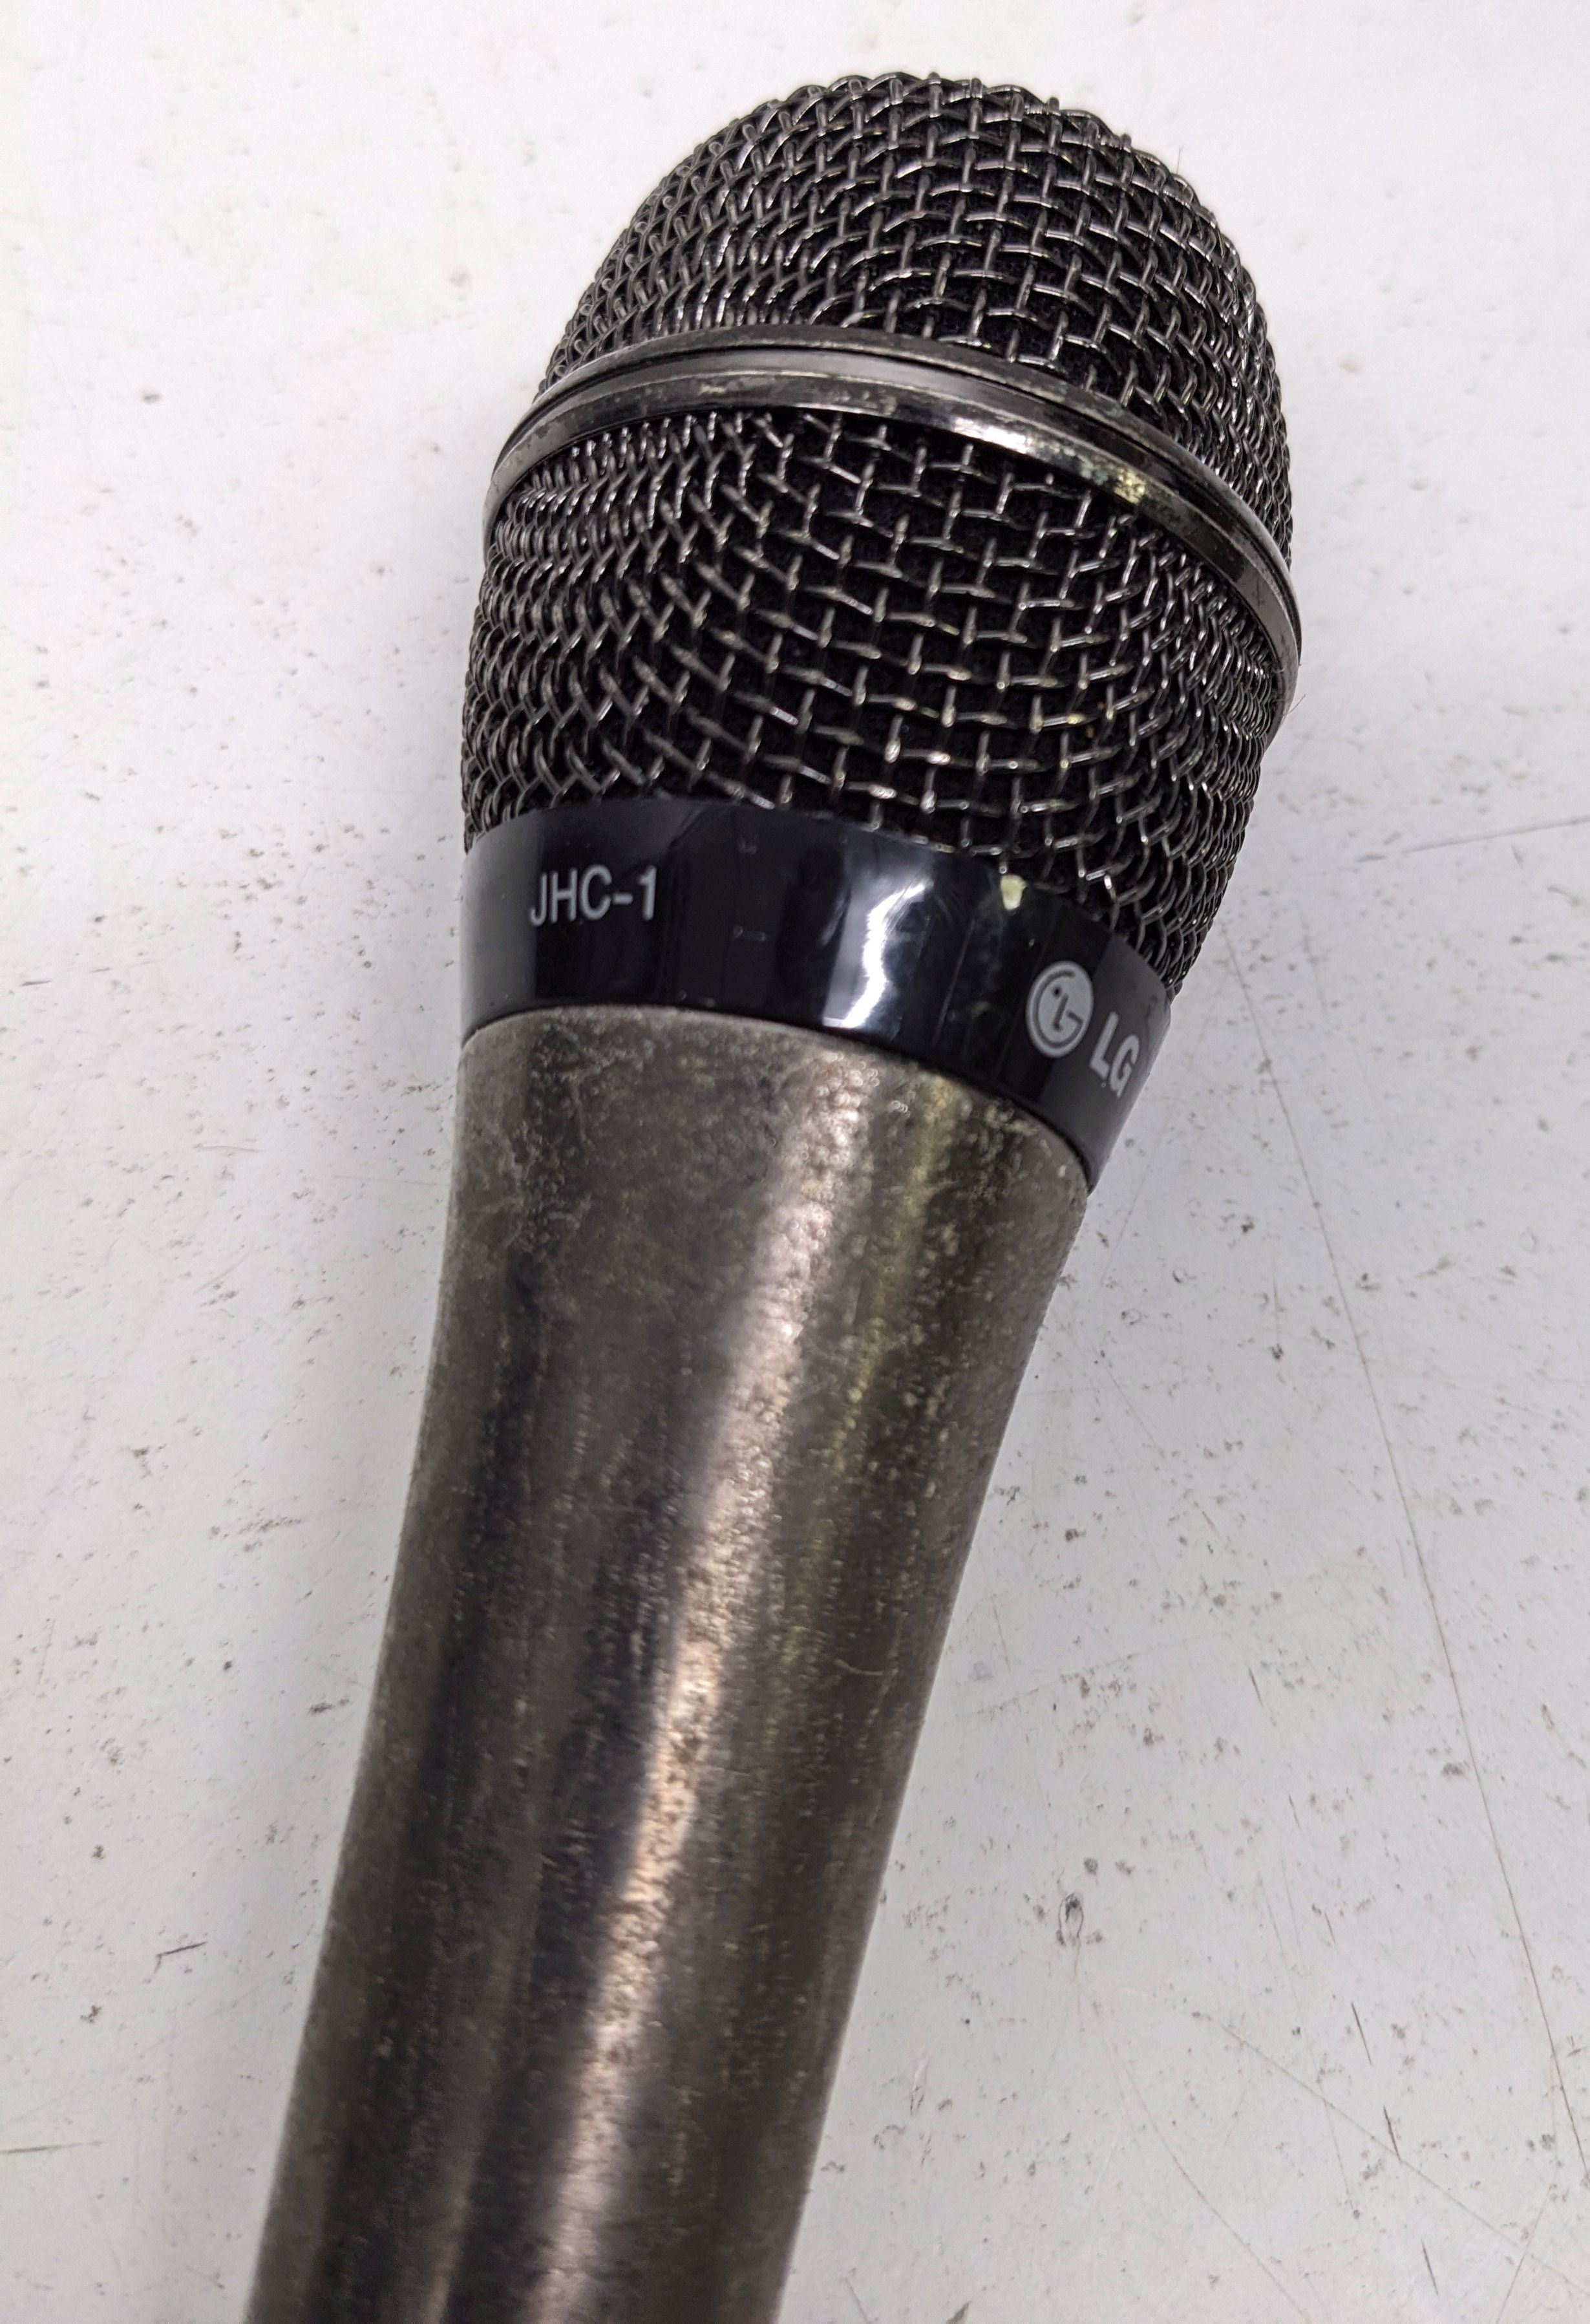 Высококачественный динамический микрофон LG, модель JHC-1